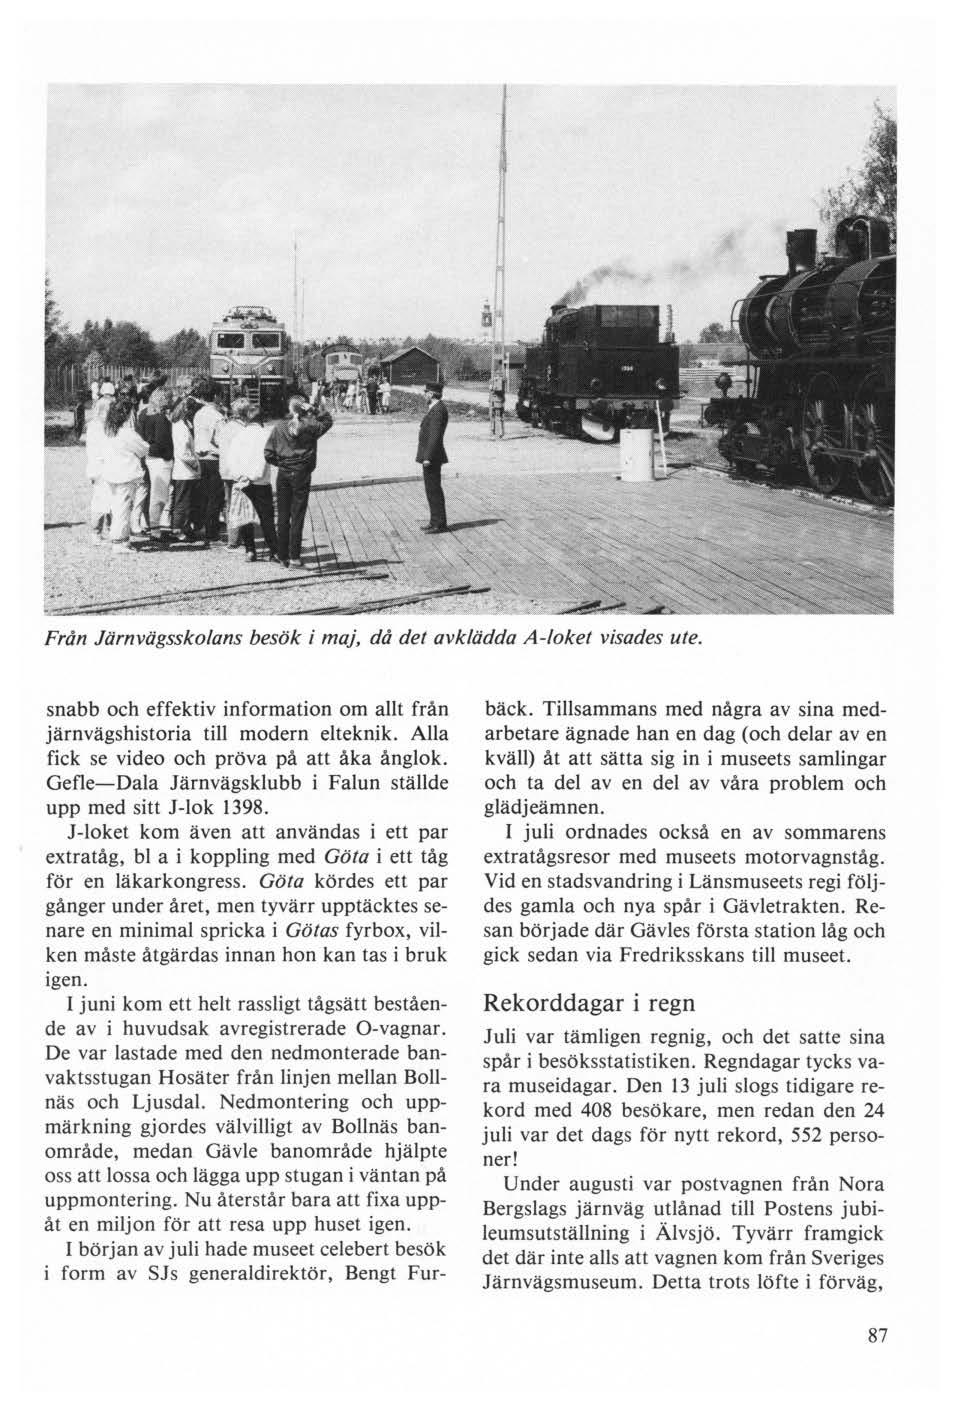 Från Järnvägsskolans besök i maj, då det avklädda A-loket visades ute. snabb och effektiv information om allt från järnvägshistoria till modern elteknik.